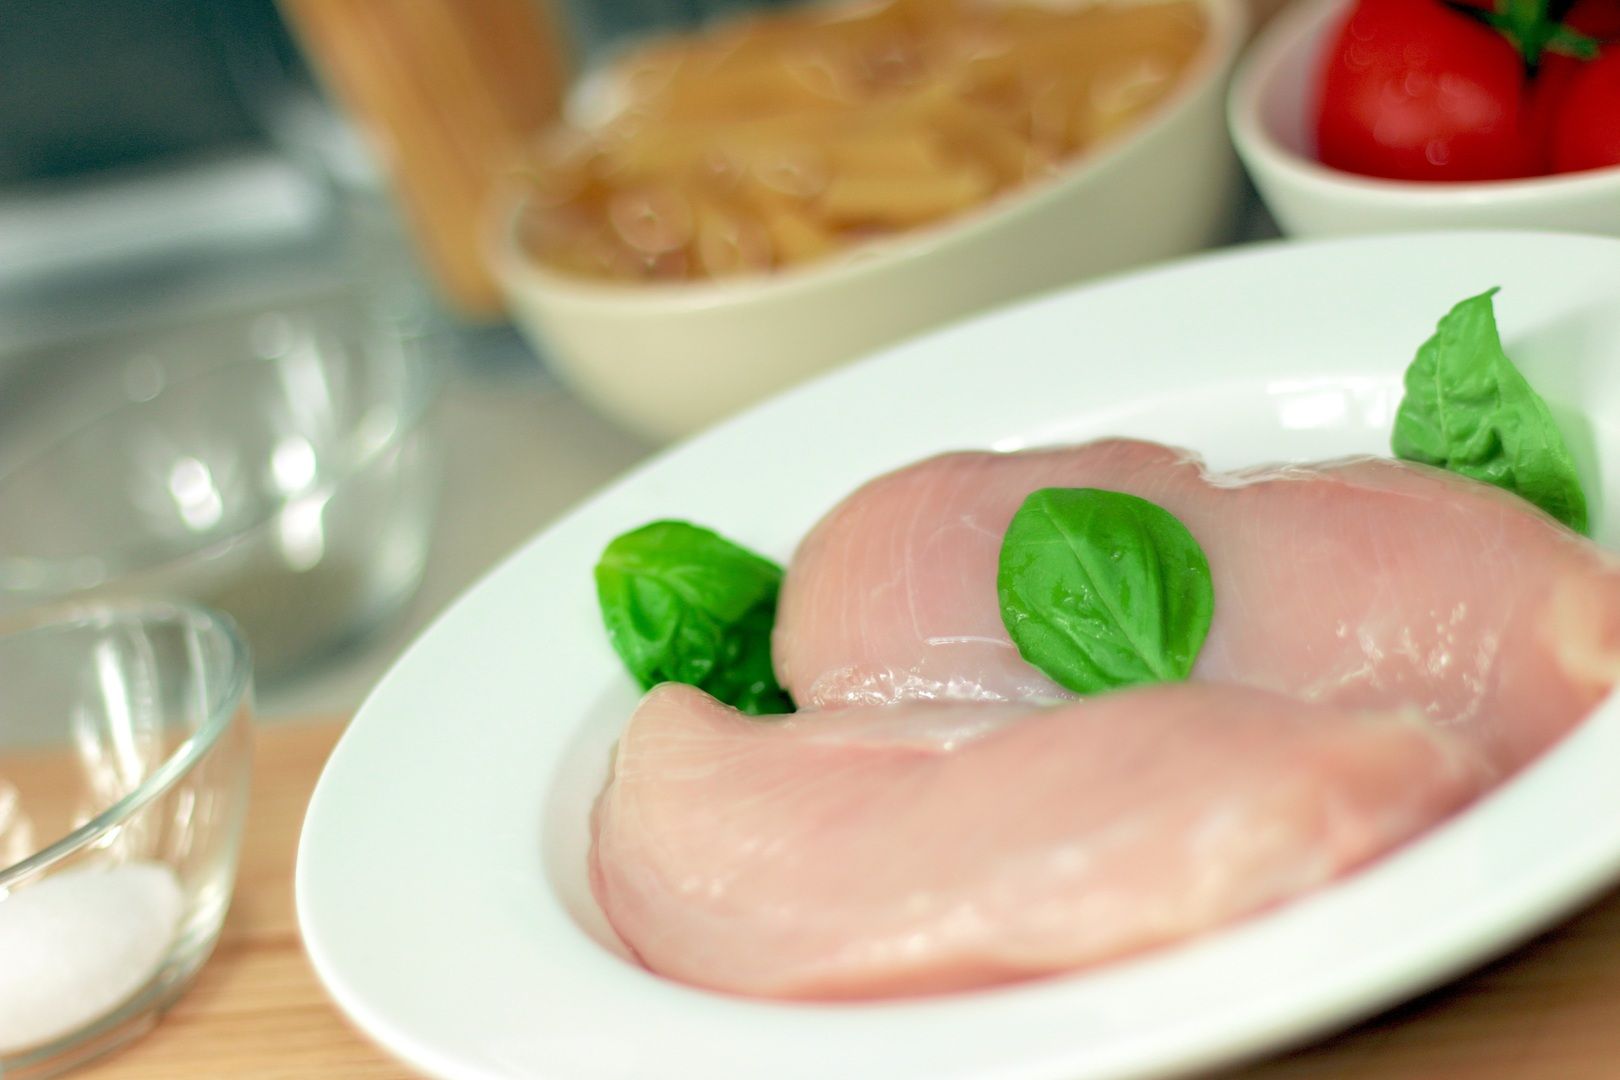 Мытье сырой курицы перед приготовлением может привести к заражению вредными бактериями Общество